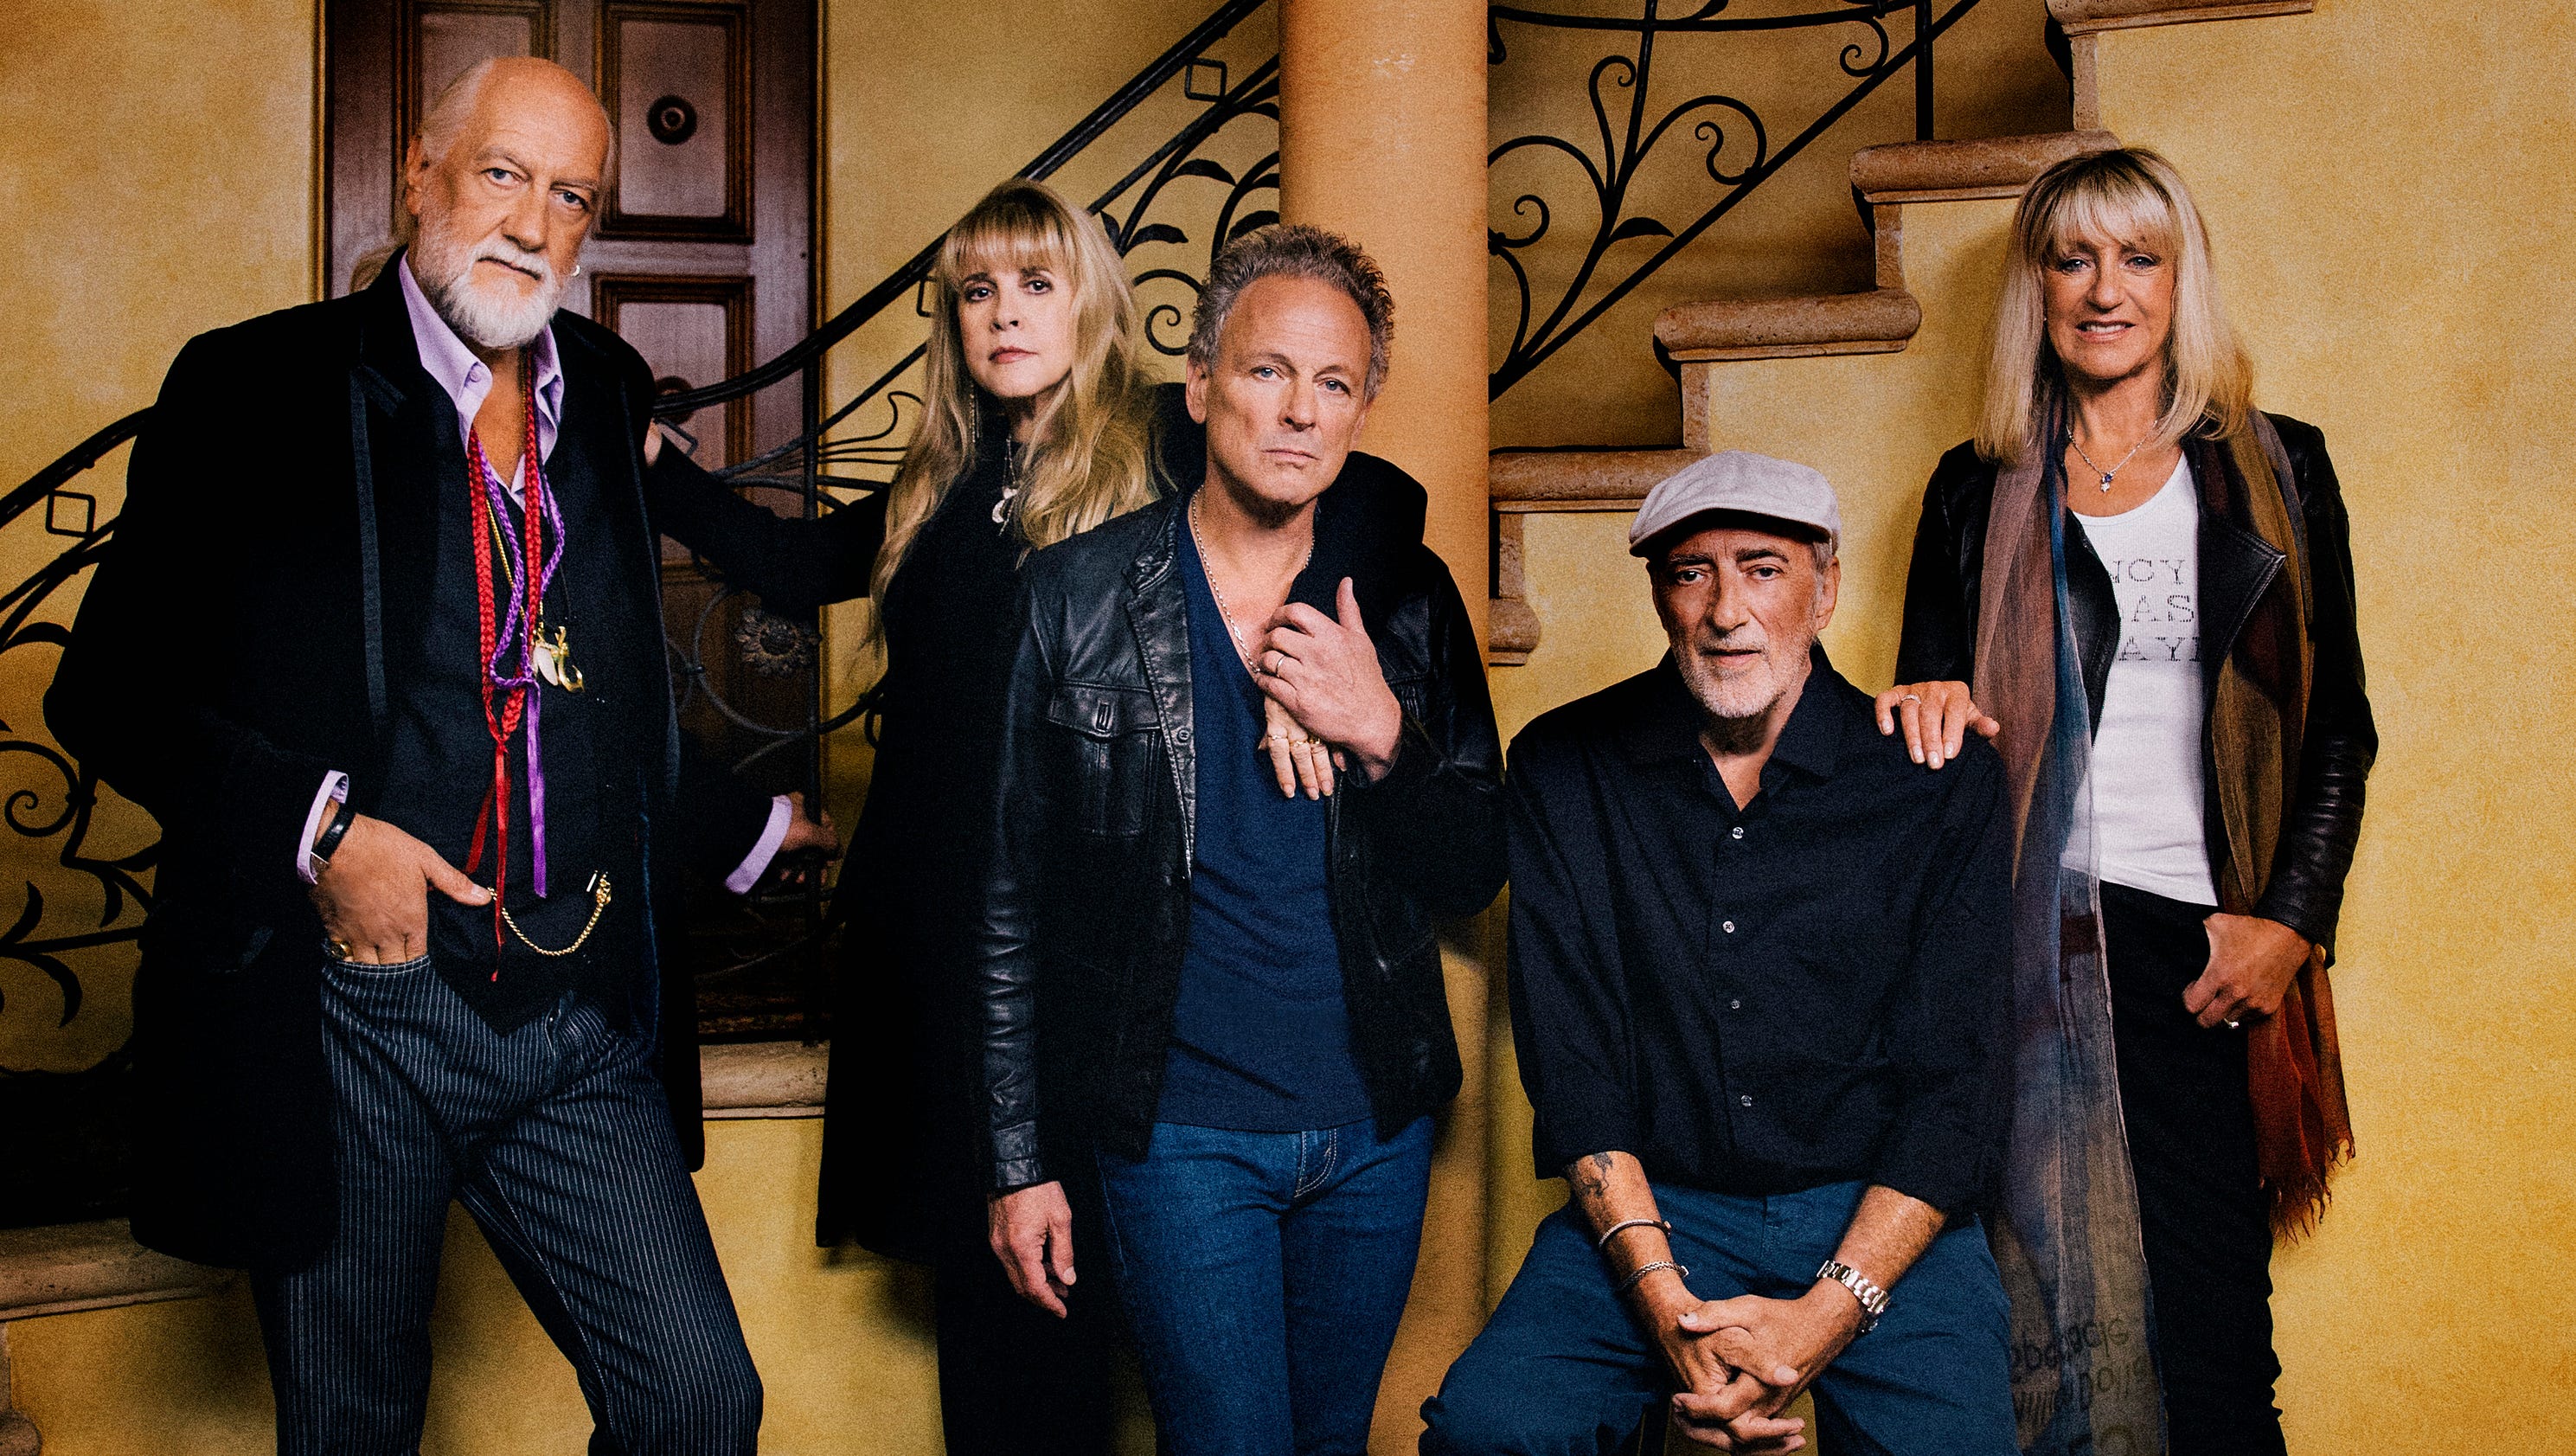 Fleetwood Mac concert at Verizon Arena postponed